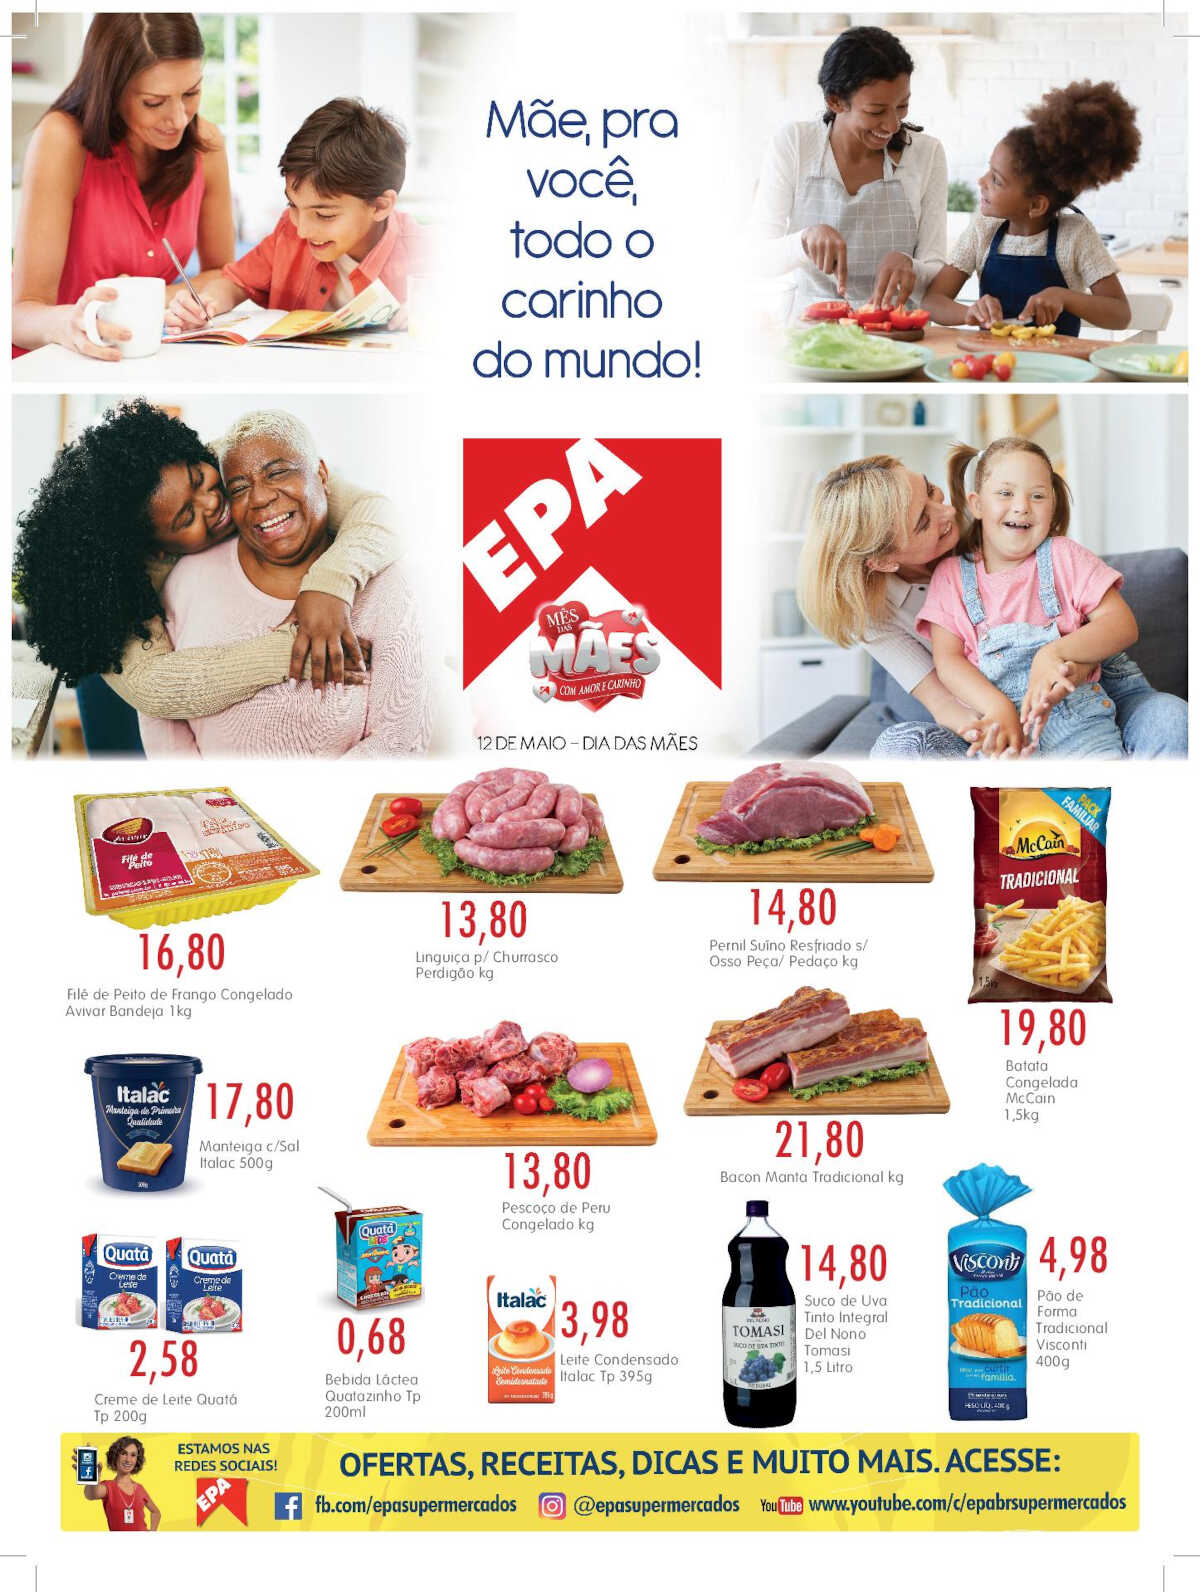 Ofertas Epa Supermercados até 15/05